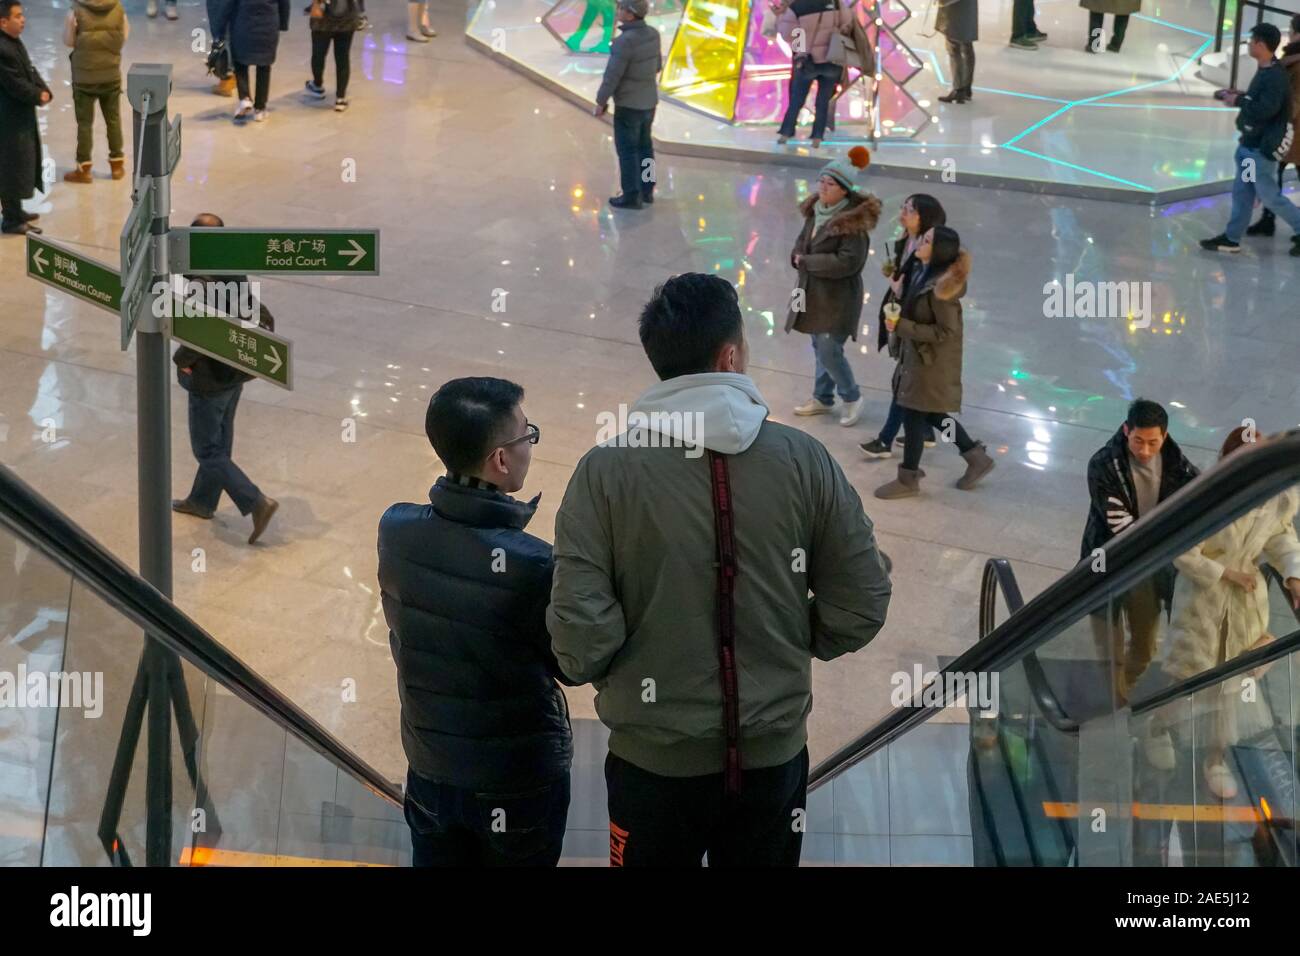 Die Parkview Green Shopping Mall in Peking mit internationalen Marken von schnelle Mode bis zu High-End-Luxus. Shopping Mall mit Besucher während der Weihnachtszeit. Peking, China. Dezember 5th, 2019 Stockfoto